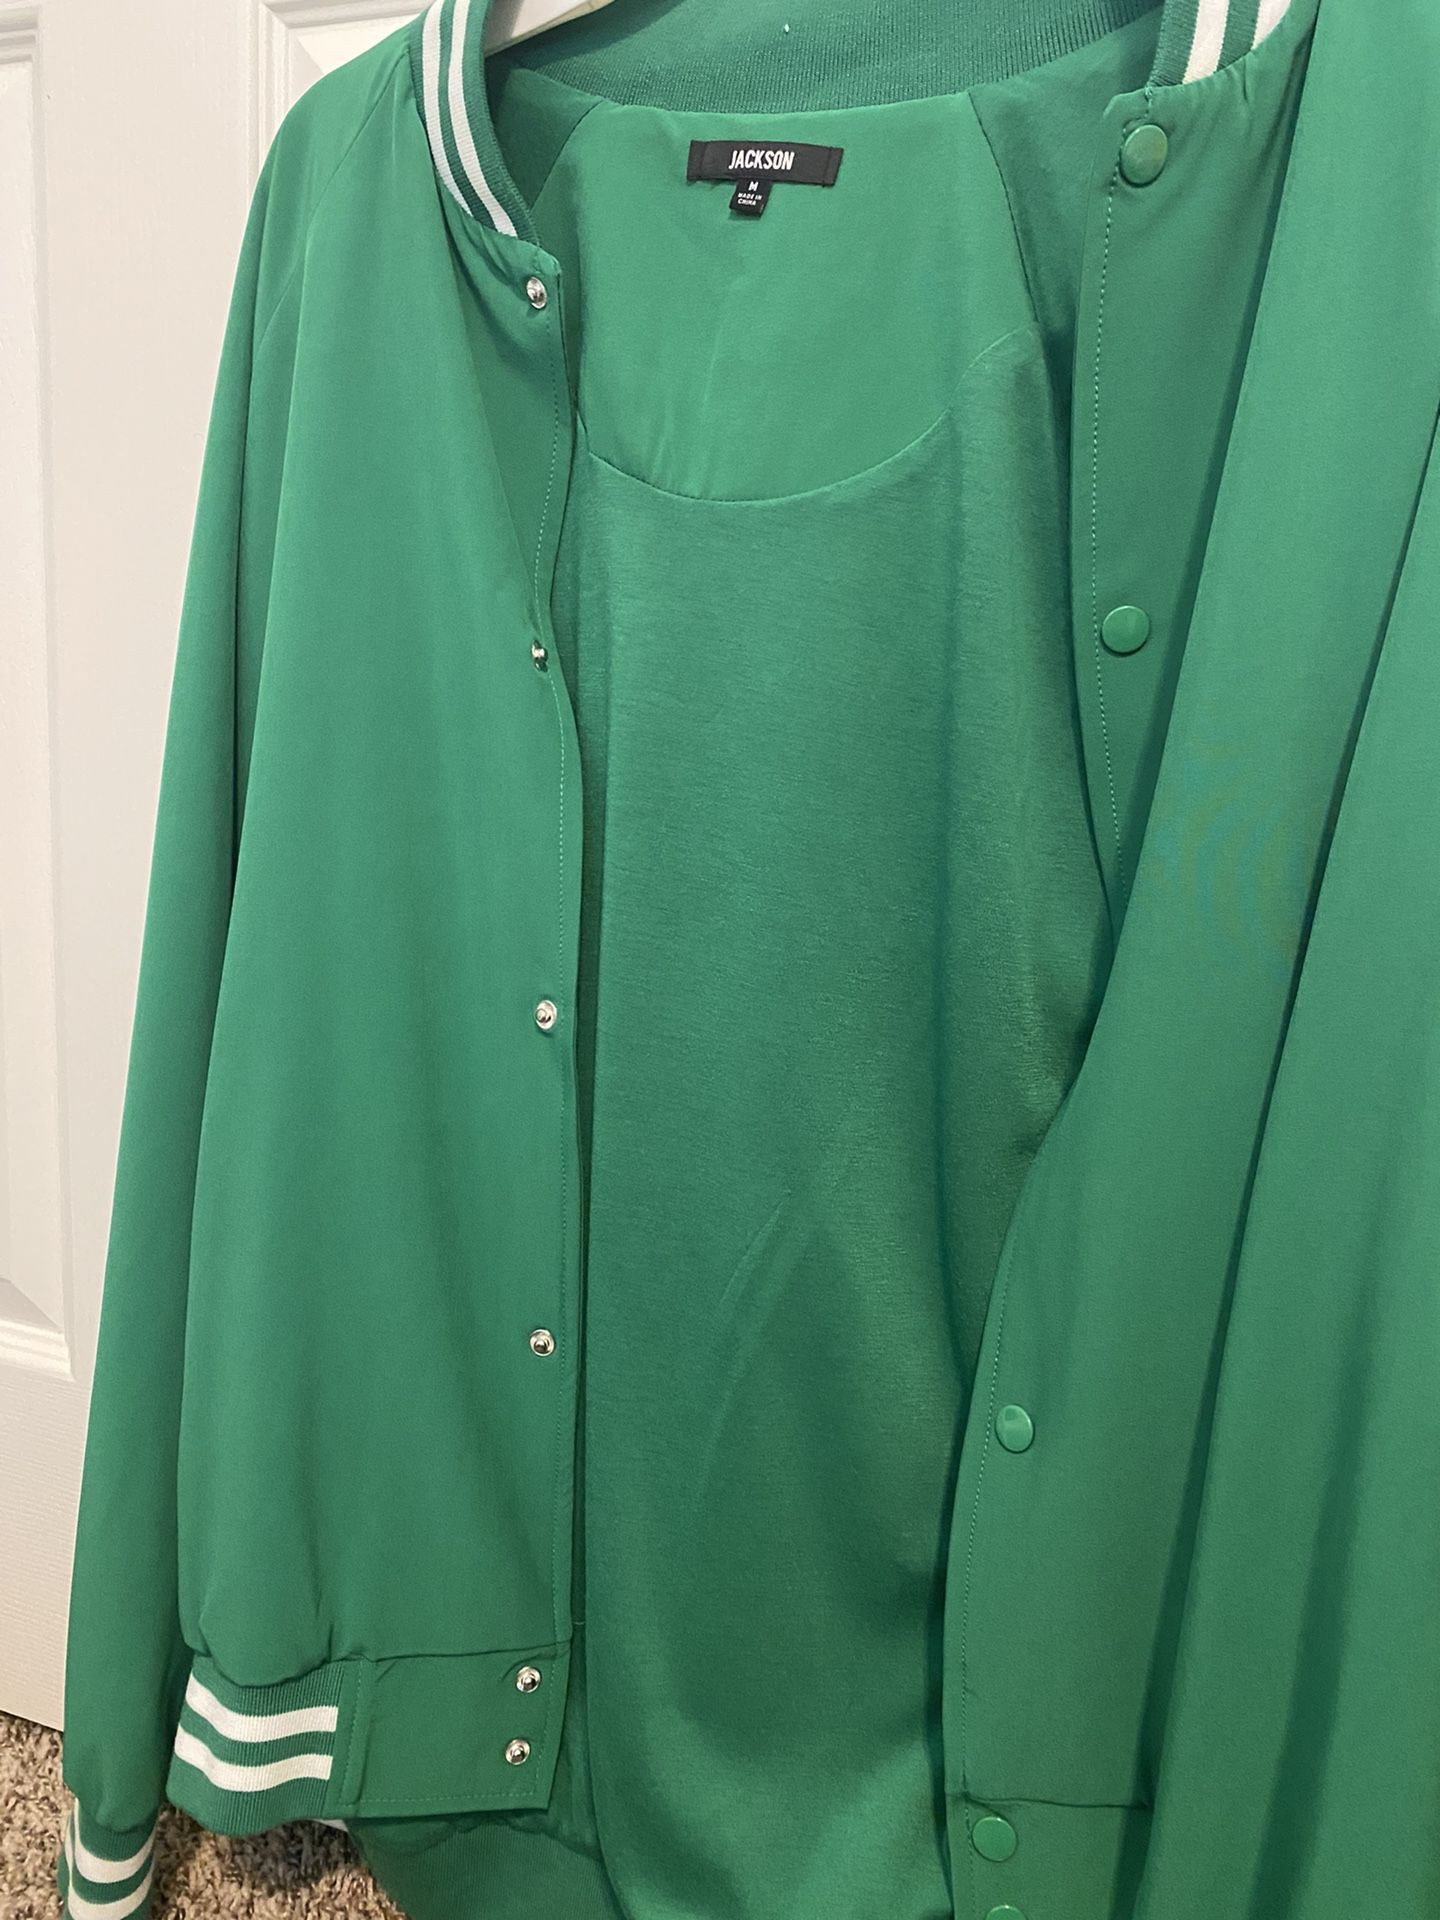 Men’s Green Jacket 